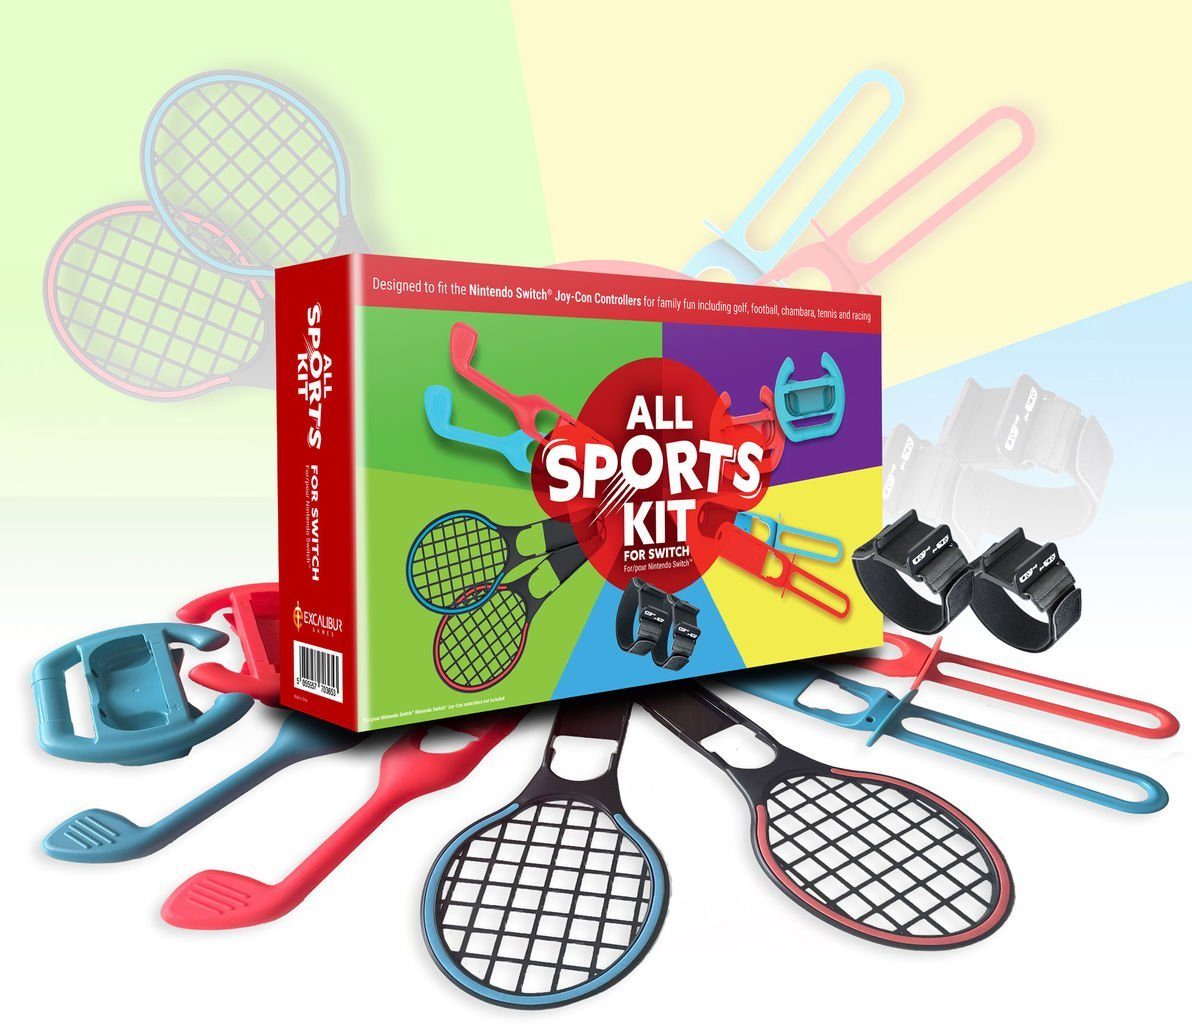 Nintendo Switch Switch Kit Golfschläger) Sports (Set, St) Armriemen, und 10 Sports (Bein- Switch-Controller All